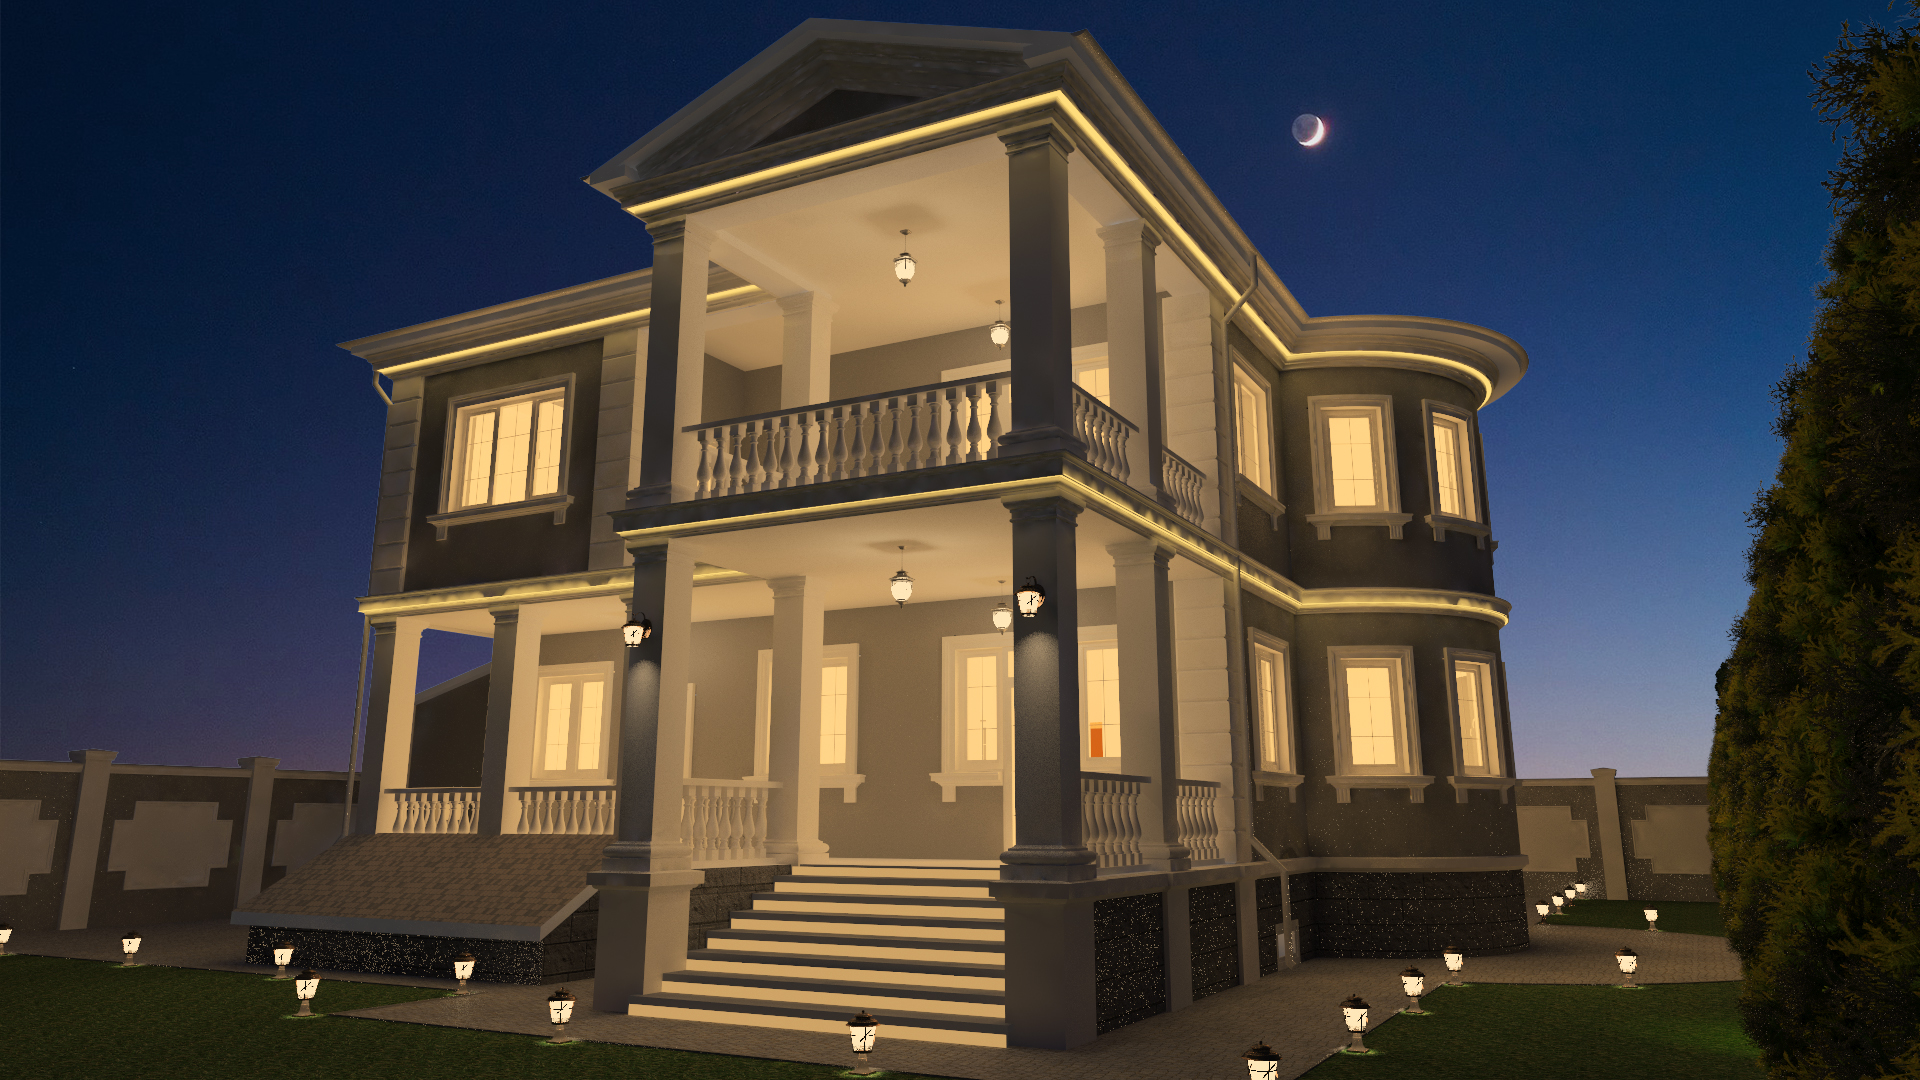 Le projet de la maison dans le style classique dans 3d max vray 3.0 image